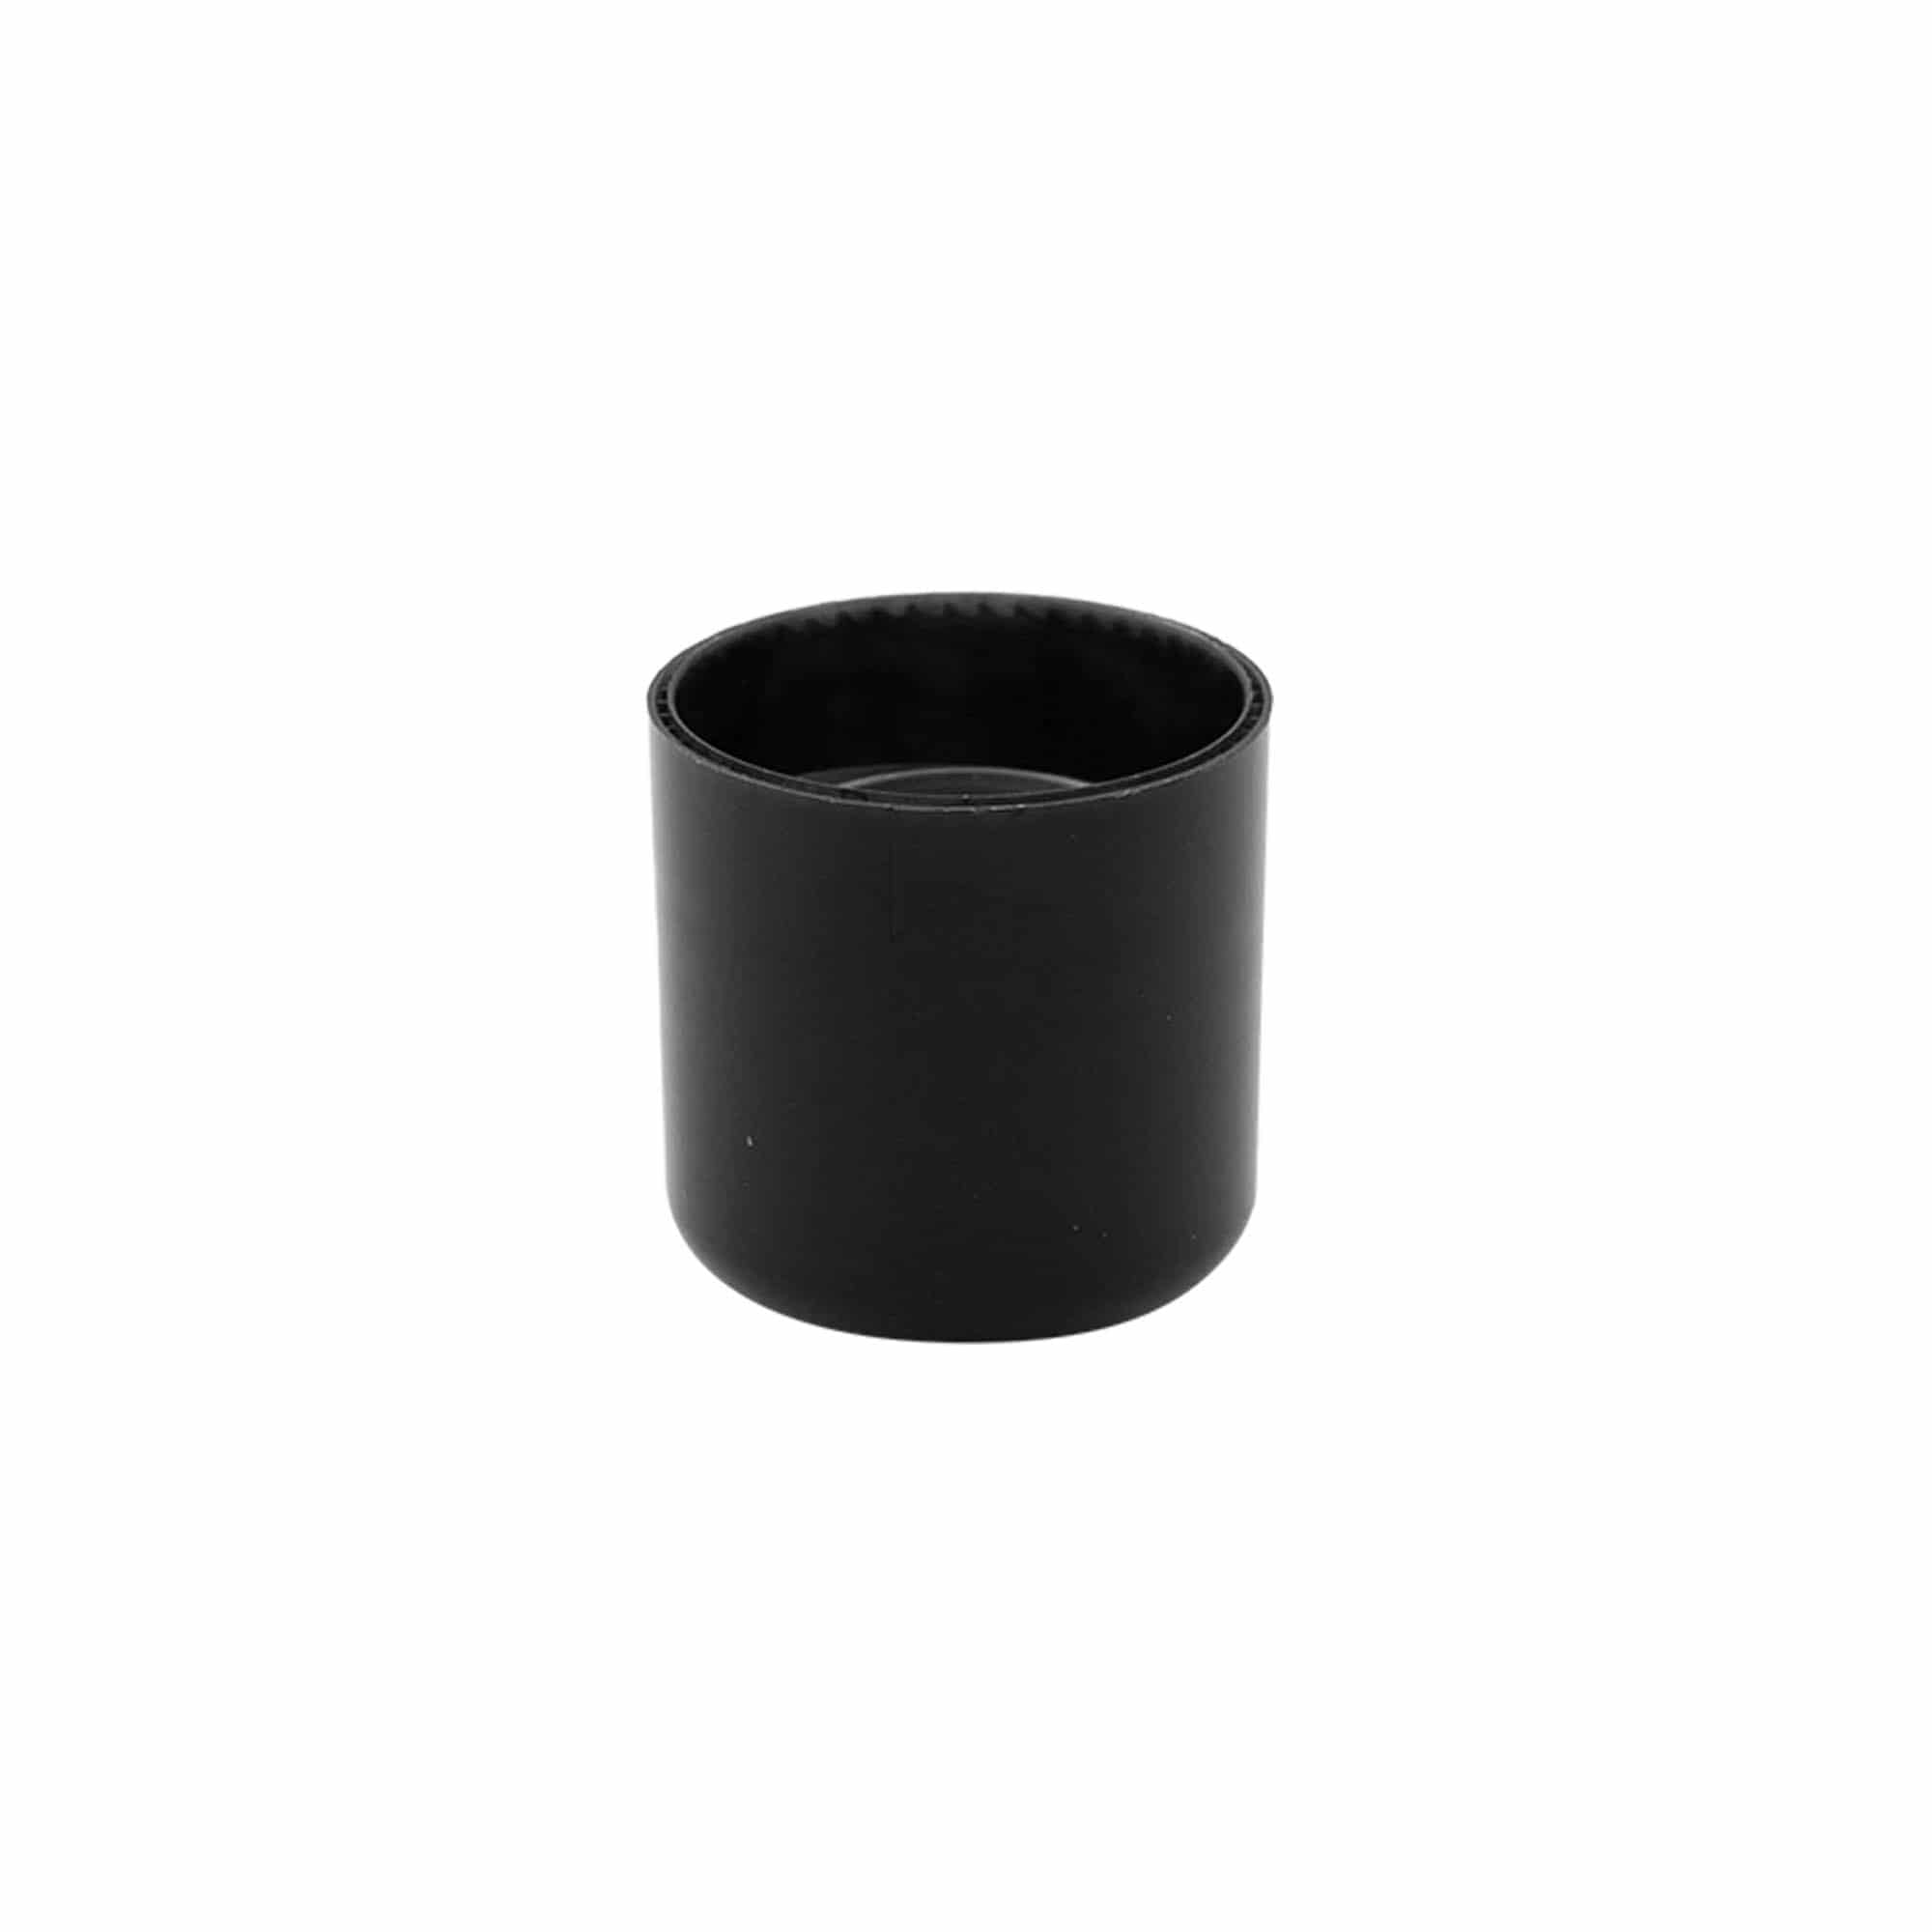 Schraubverschluss mit Spritzeinsatz, PP-Kunststoff, schwarz, für Mündung: GPI 24/410